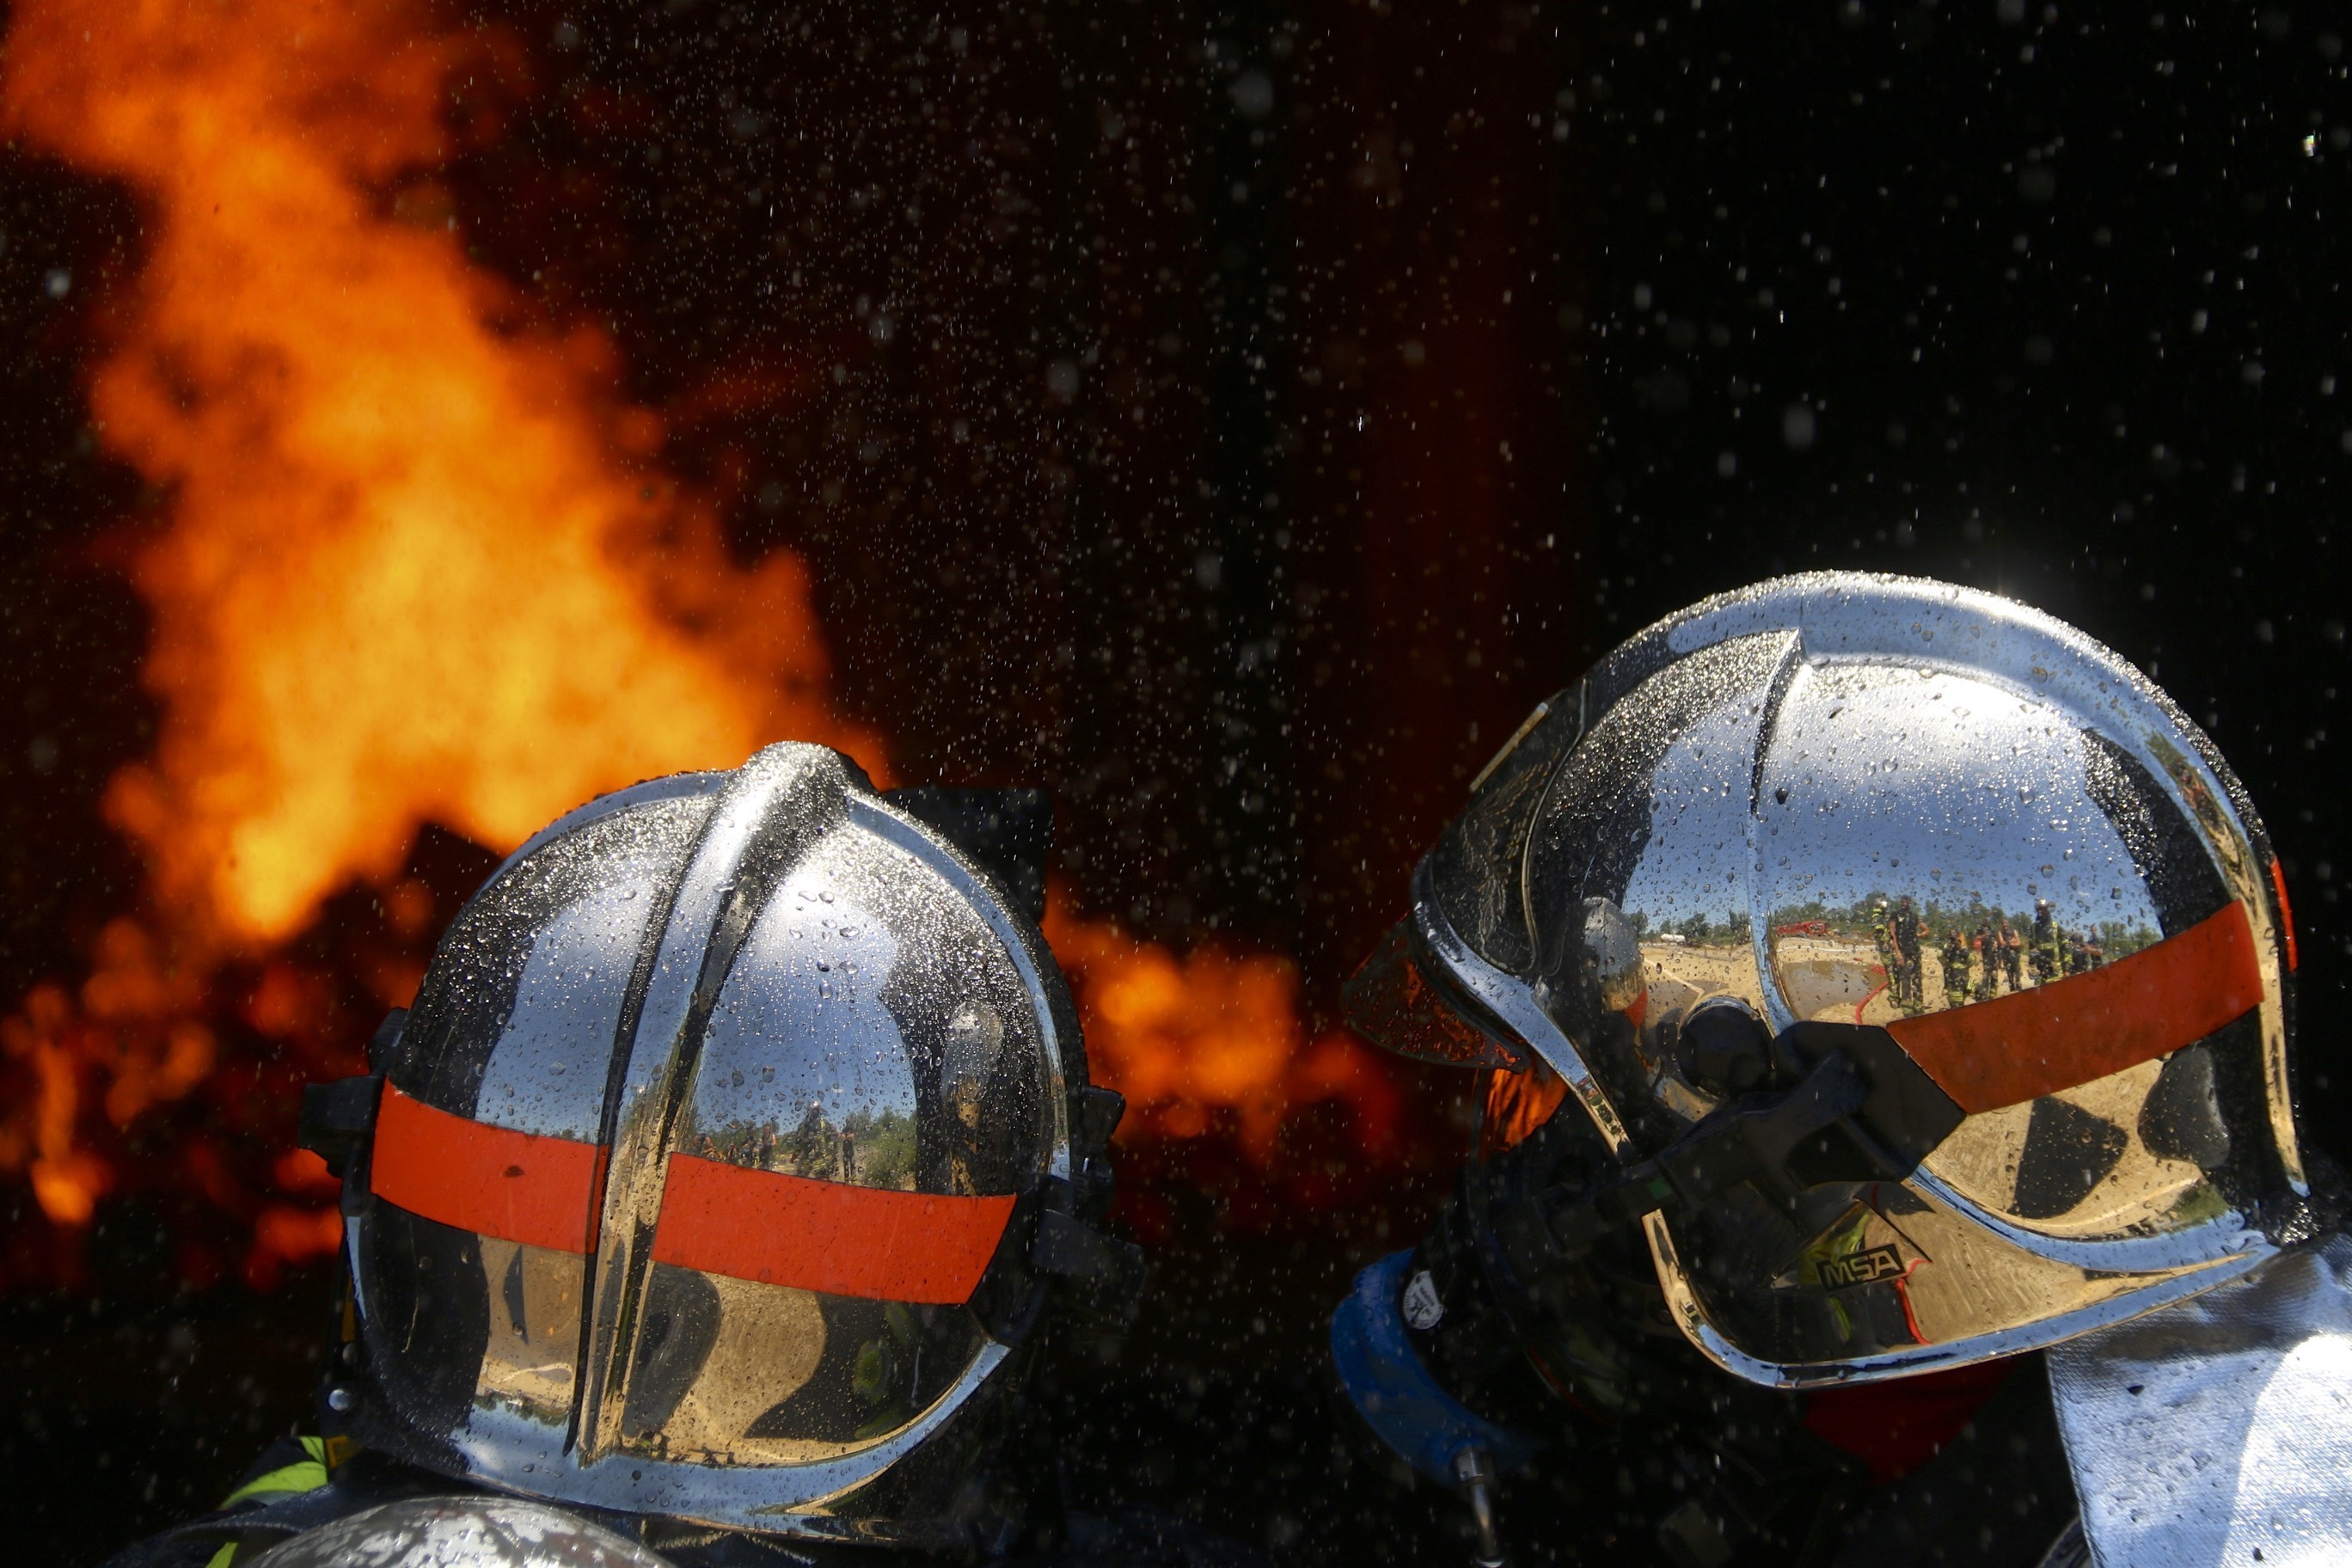     Un trentenaire grièvement brûlé dans un incendie à Ducos

